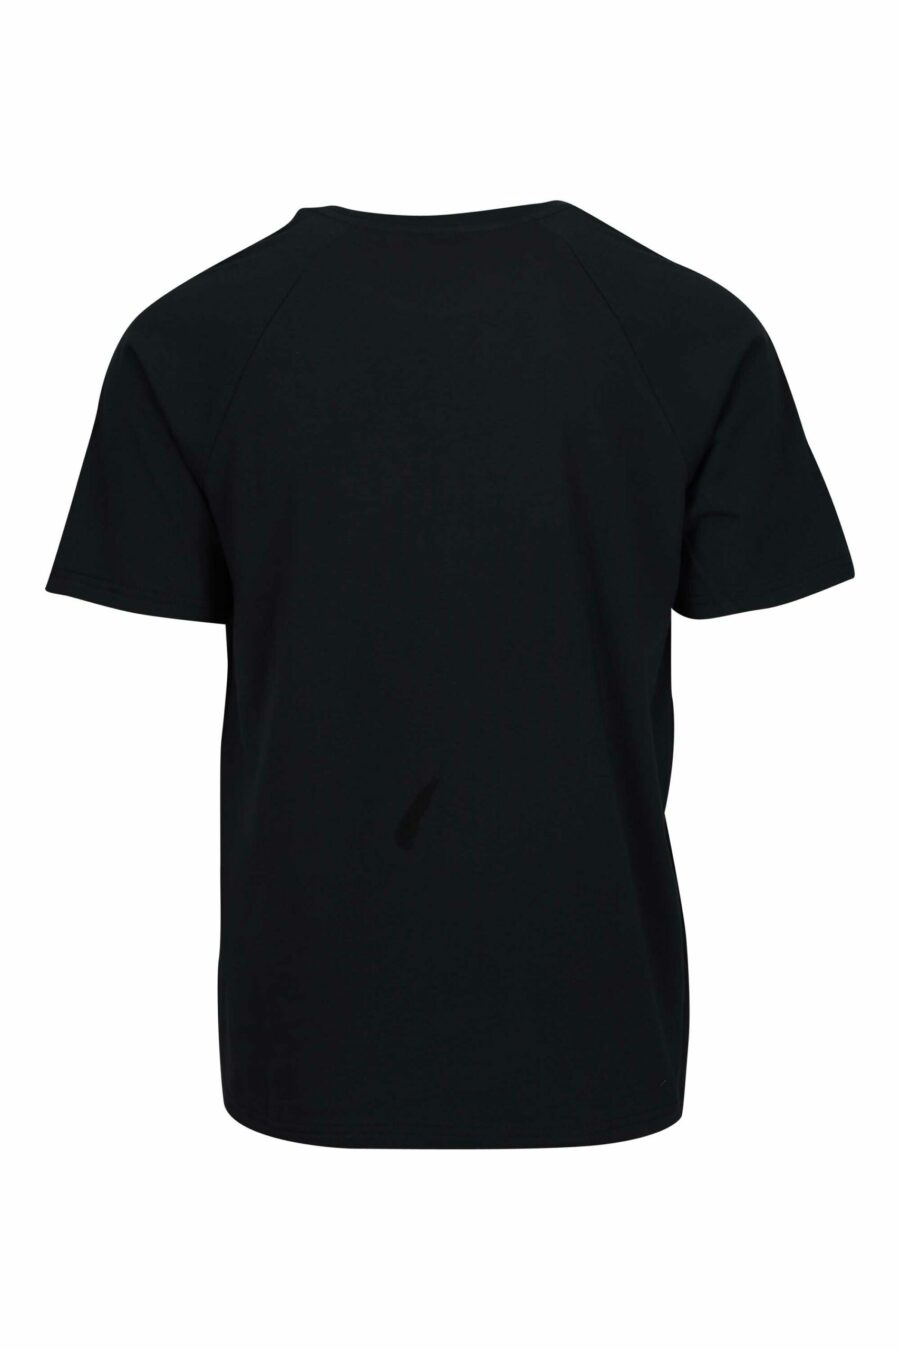 T-shirt noir avec logo d'ours "underbear" sur la bande d'épaule - 667113602356 1 à l'échelle